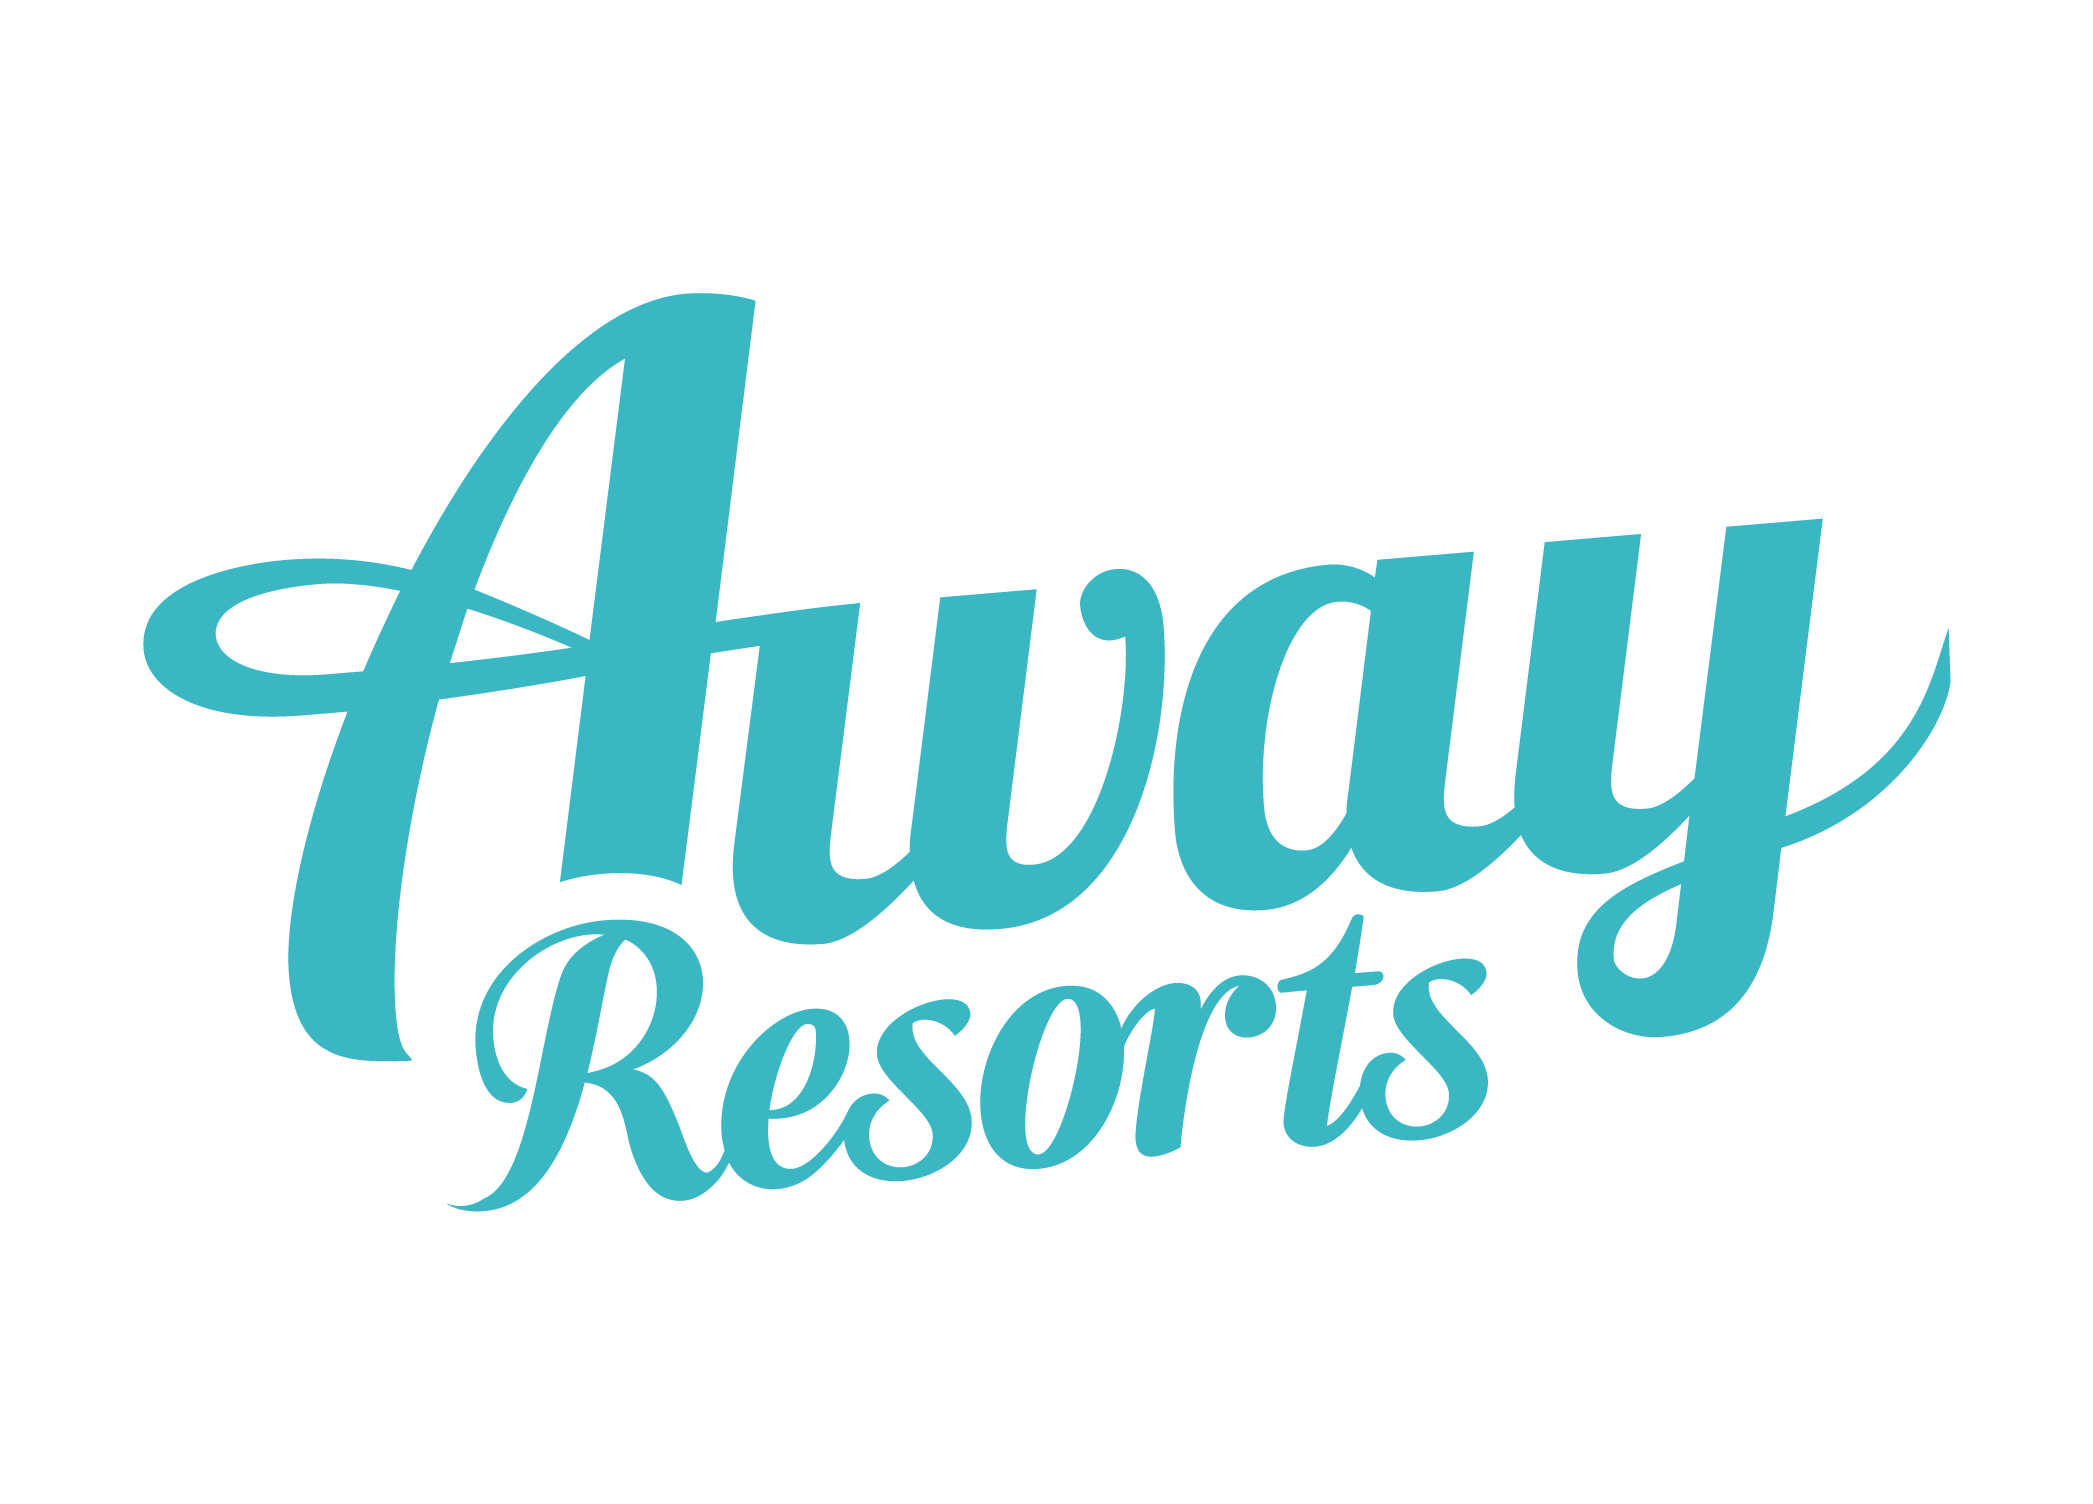 Away resorts logo